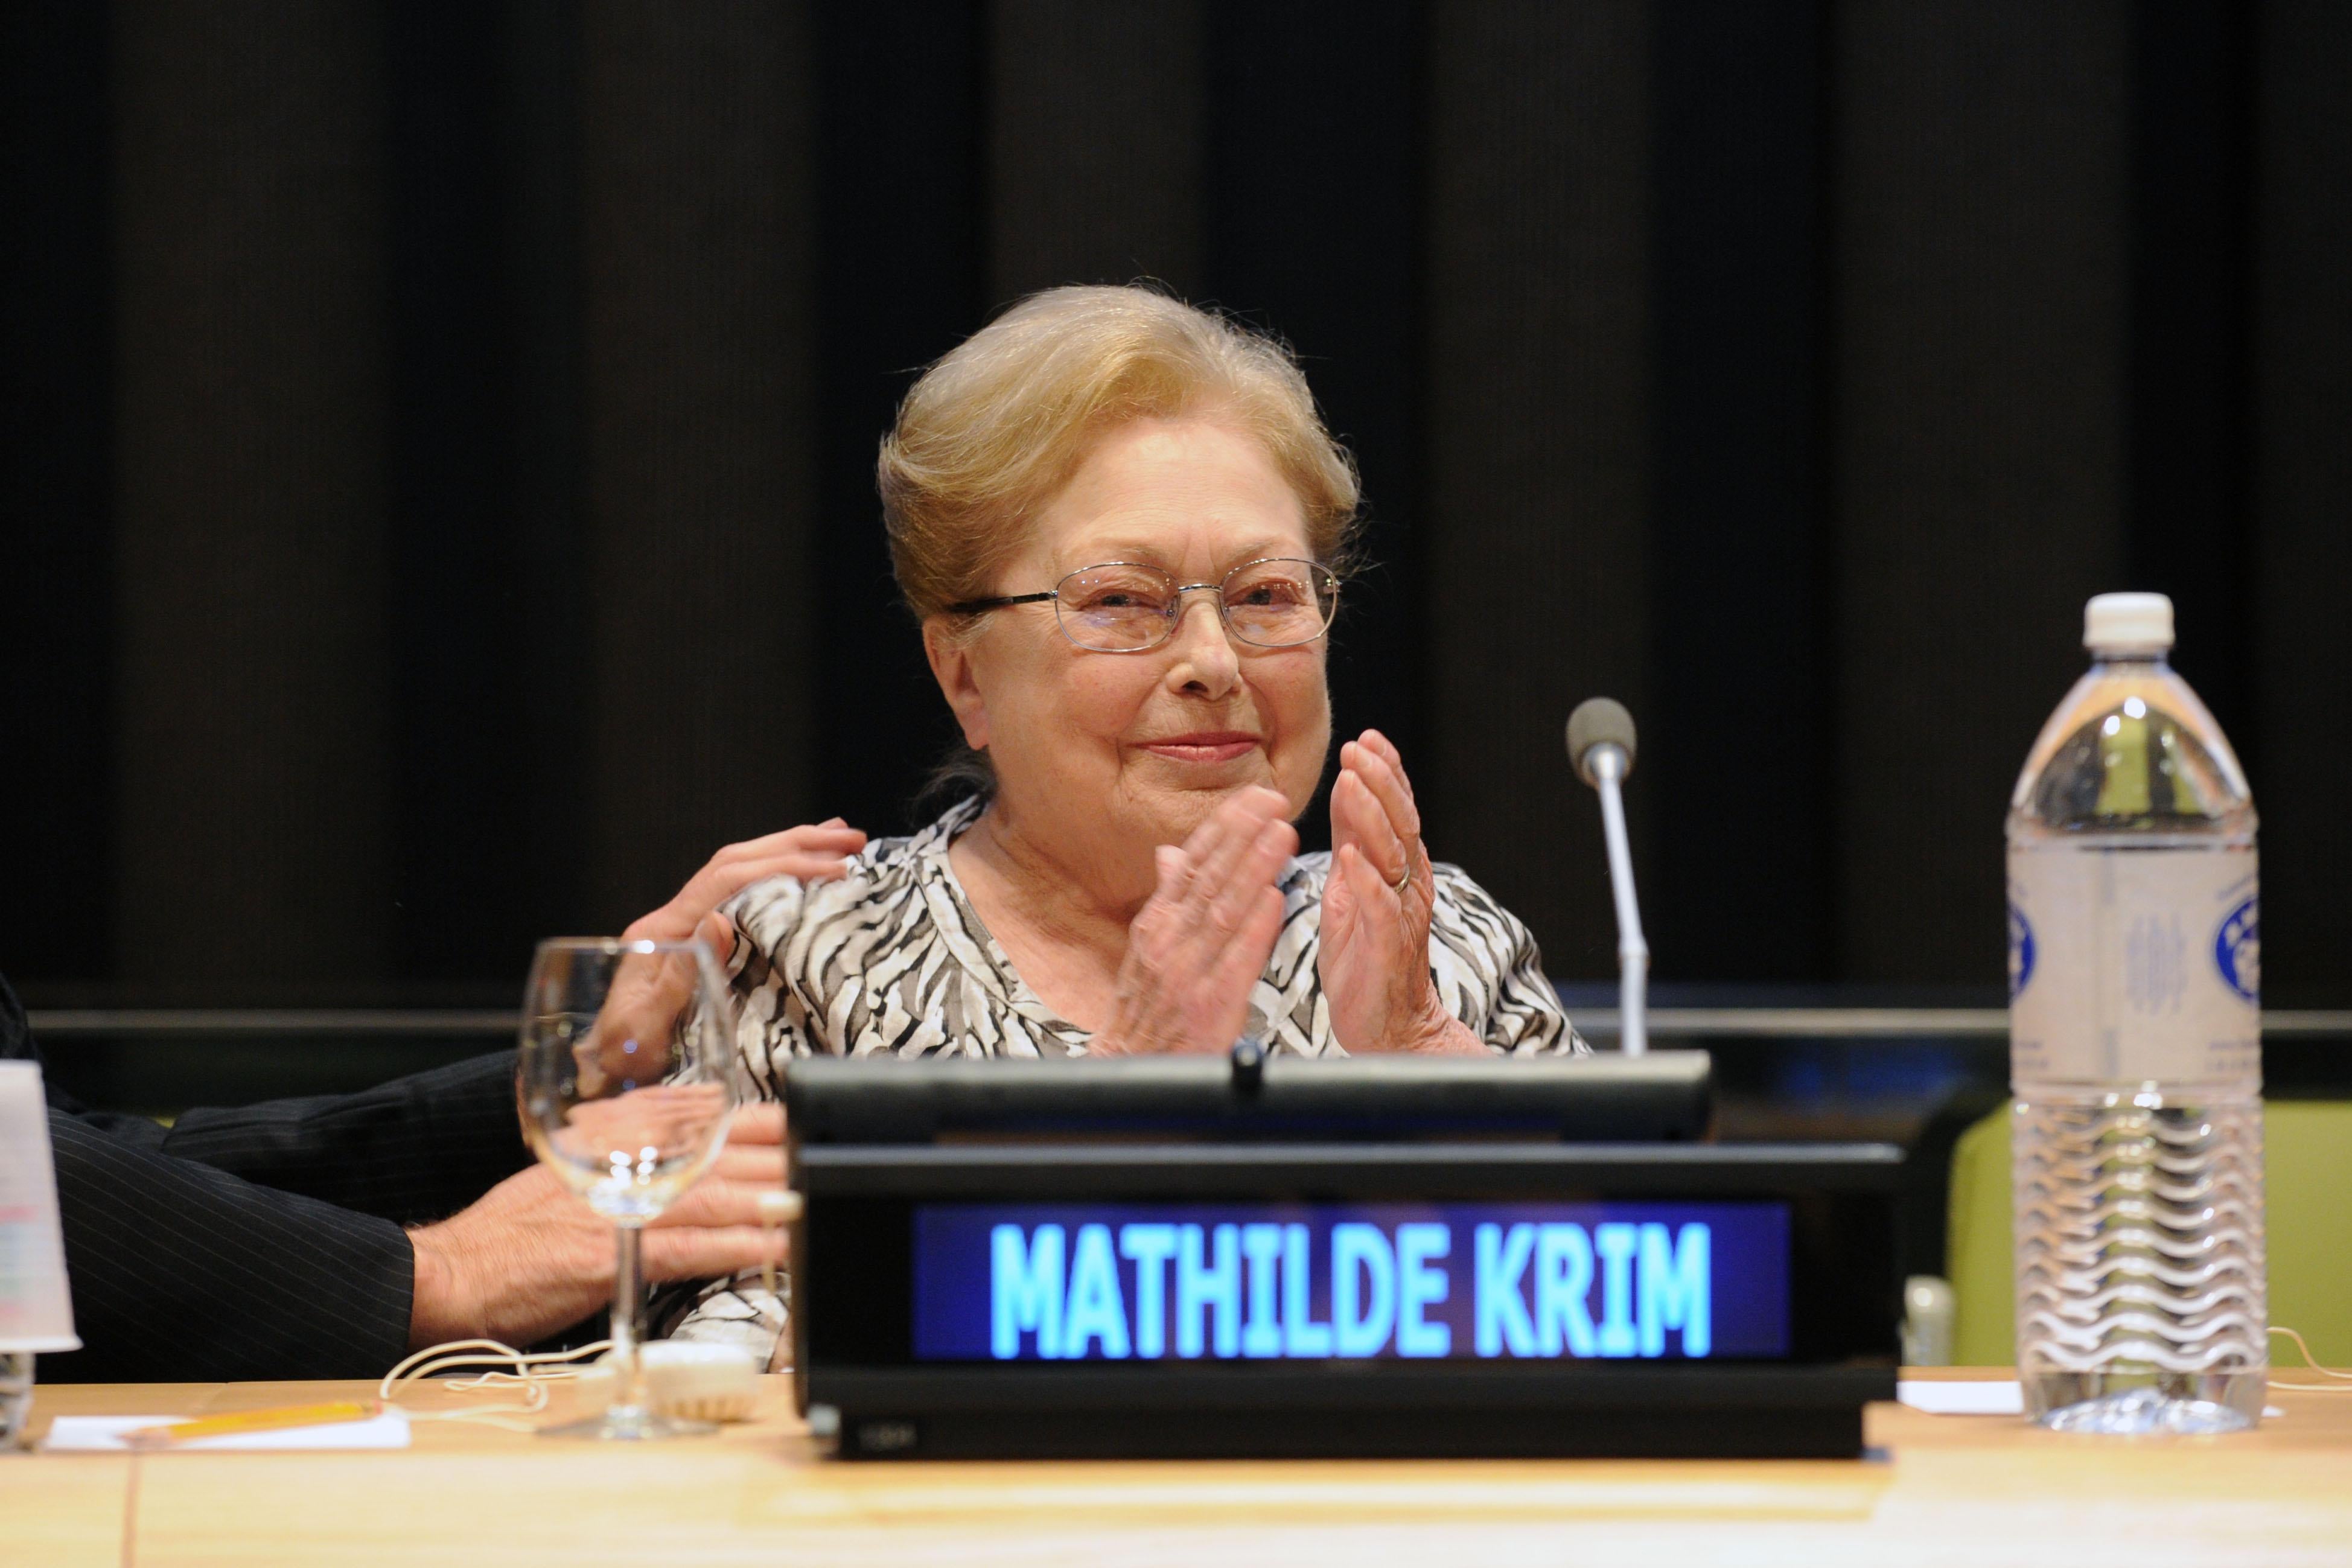 Dr. Mathilde Krim speaks at the U.N. headquarters on Nov. 26, 2013, in New York.